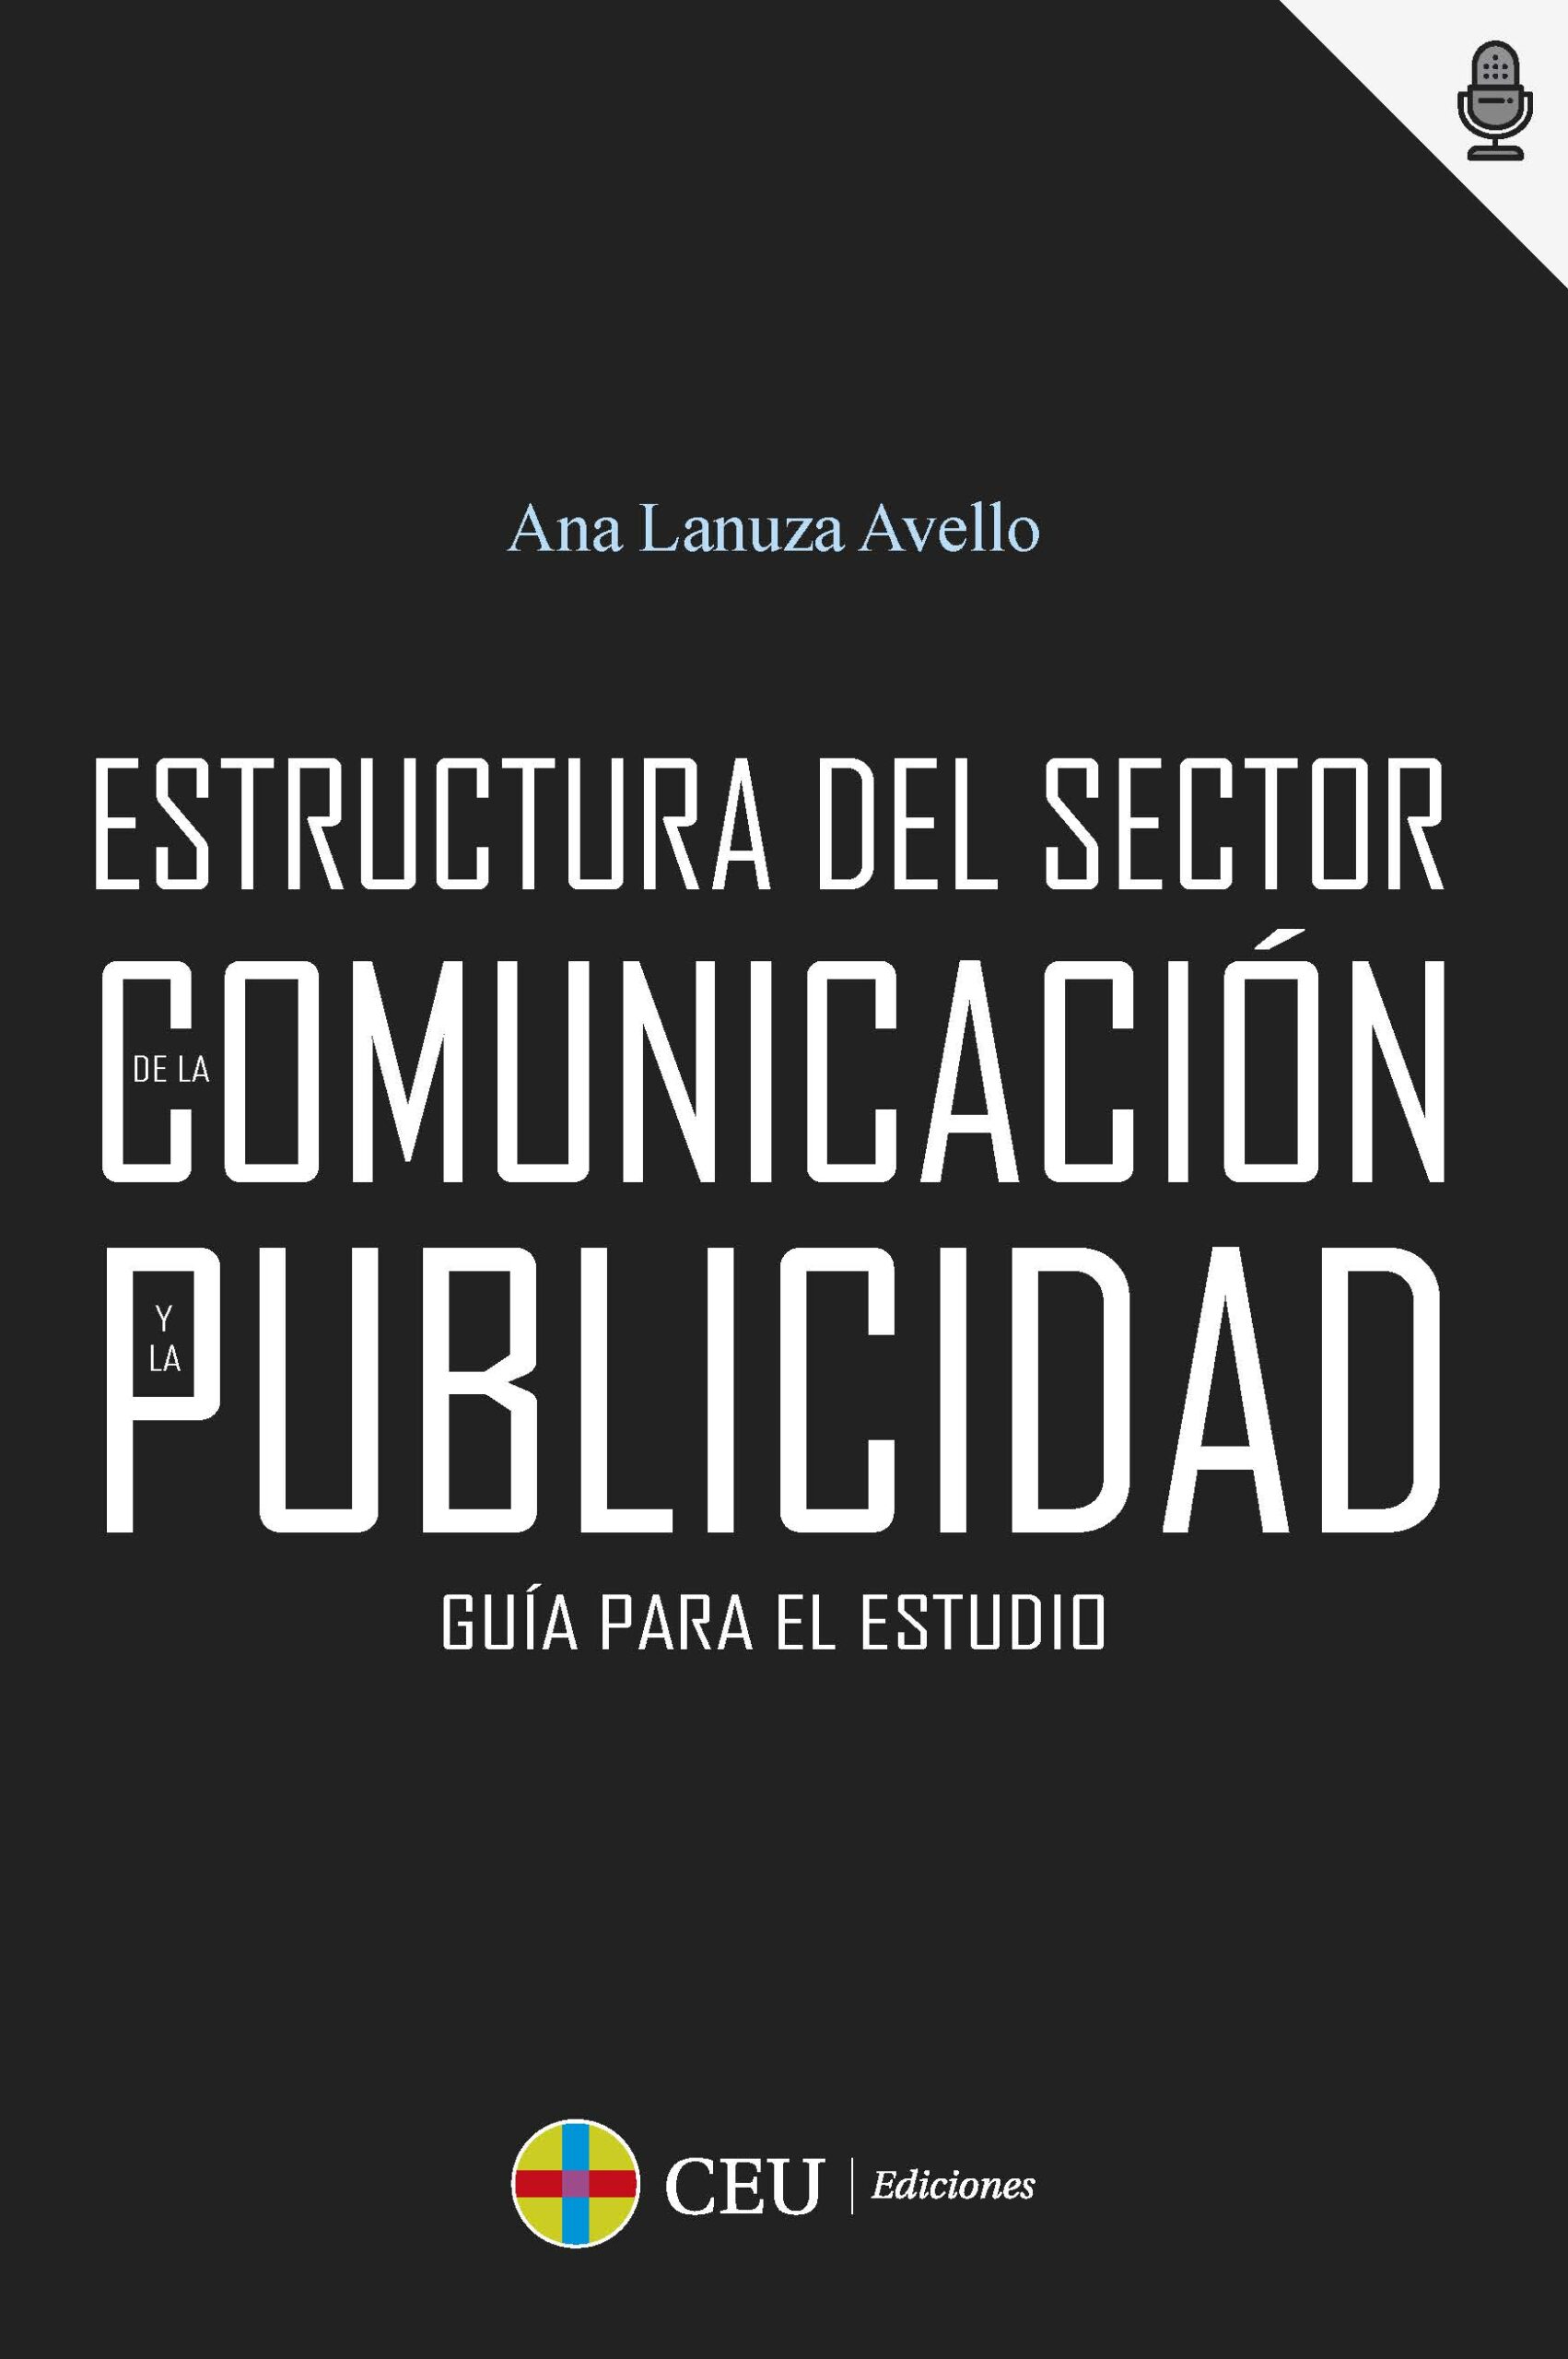 Imagen de portada del libro Guía para el estudio de la estructura del sector de la comunicación y la publicidad